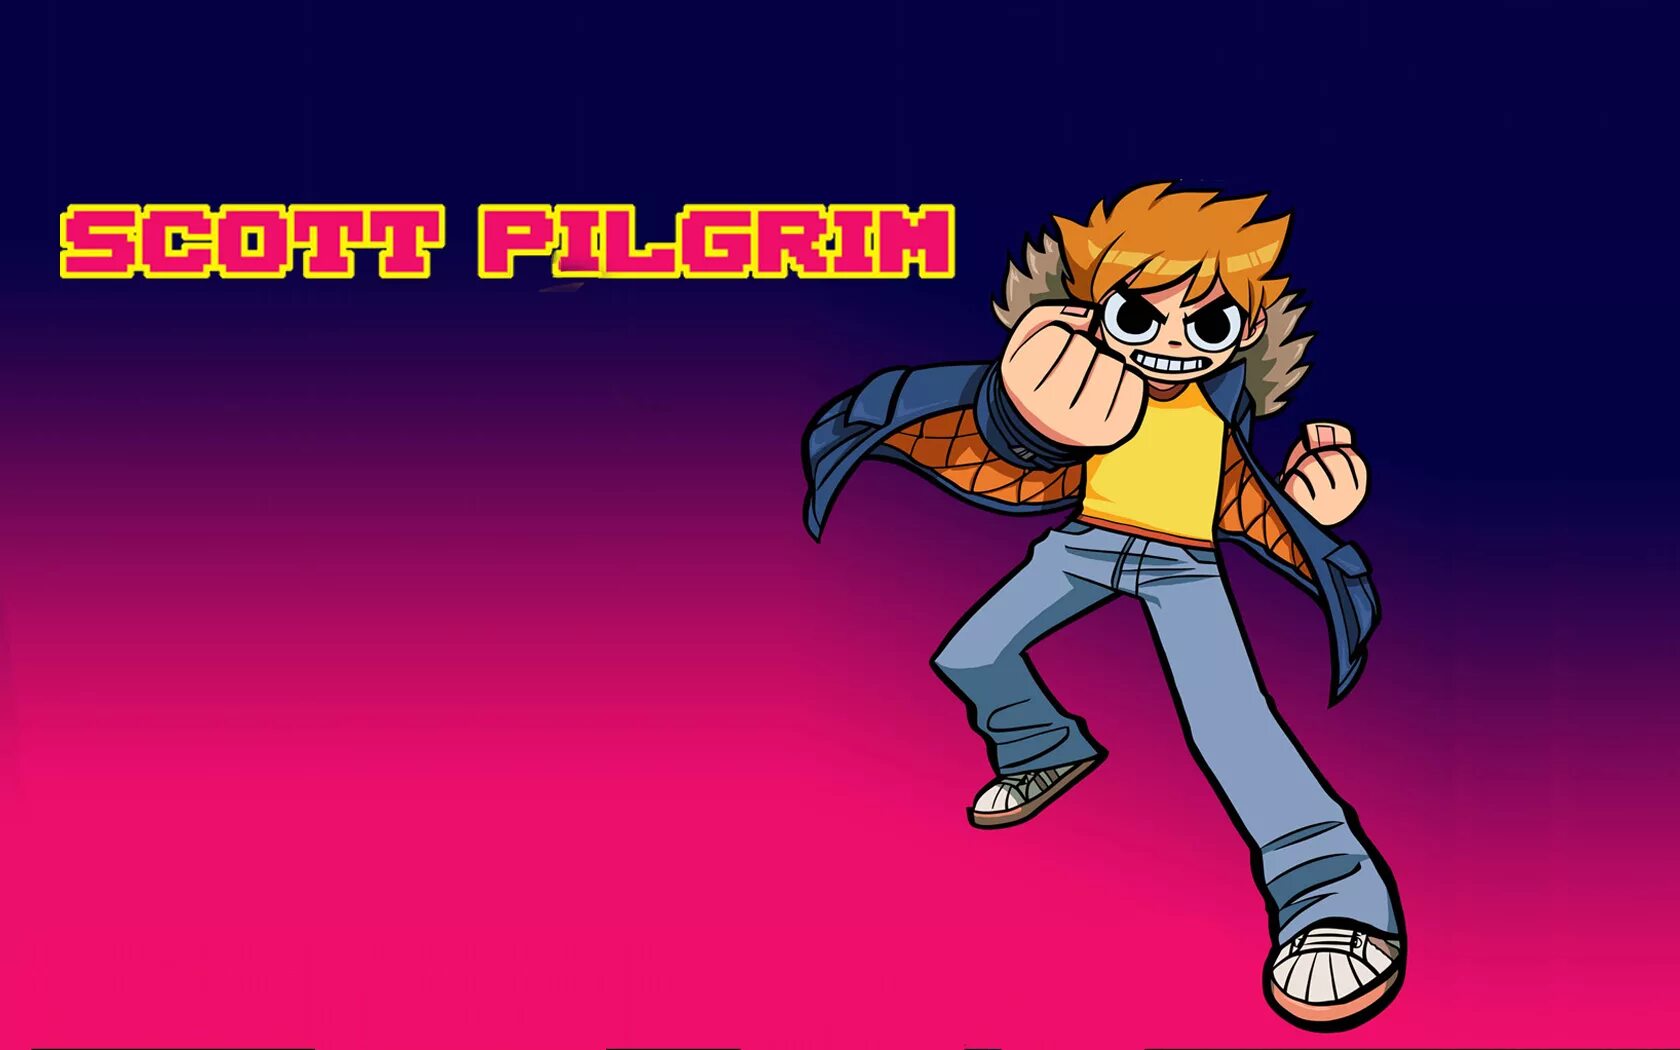 Scott Piligrim. Скотт Пилигрим Scott Pilgrim. Скотт Пилигрим комикс. Скотт Пилигрим обои.